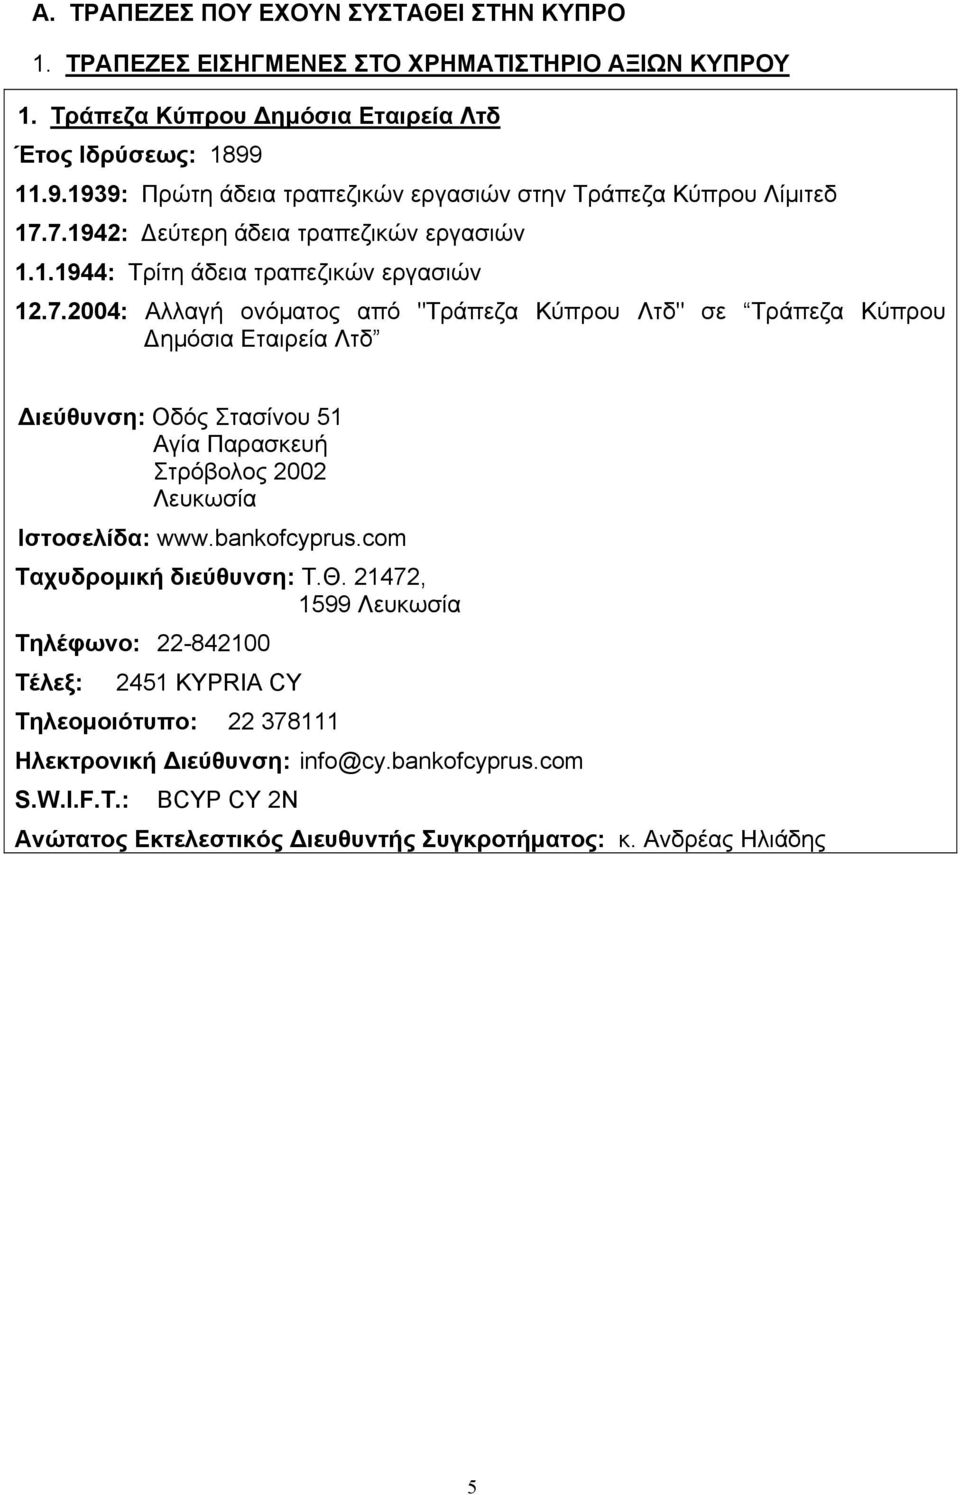 7.1942: εύτερη άδεια τραπεζικών εργασιών 1.1.1944: Τρίτη άδεια τραπεζικών εργασιών 12.7.2004: Αλλαγή ονόµατος από "Τράπεζα Κύπρου Λτδ" σε Τράπεζα Κύπρου ηµόσια Εταιρεία Λτδ ιεύθυνση: Οδός Στασίνου 51 Αγία Παρασκευή Στρόβολος 2002 Λευκωσία Ιστοσελίδα: www.